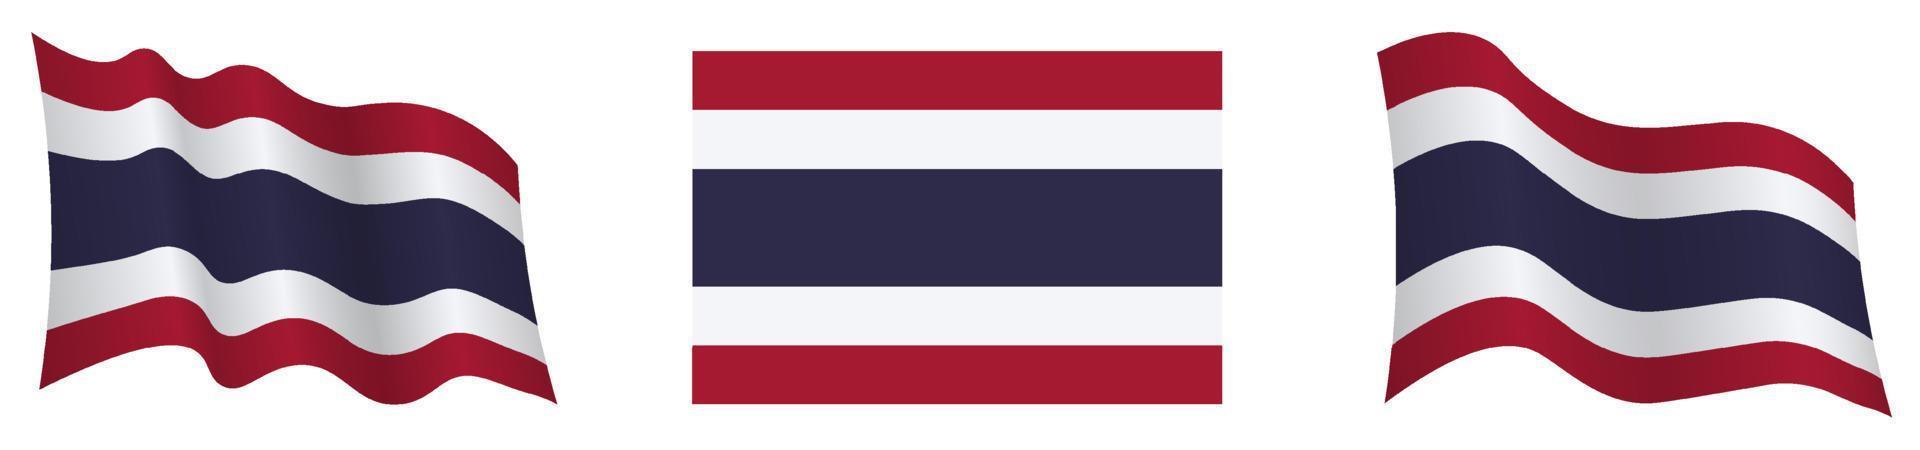 flagga av rike av thailand i statisk placera och i rörelse, utvecklande i vind i exakt färger och storlekar, på vit bakgrund vektor